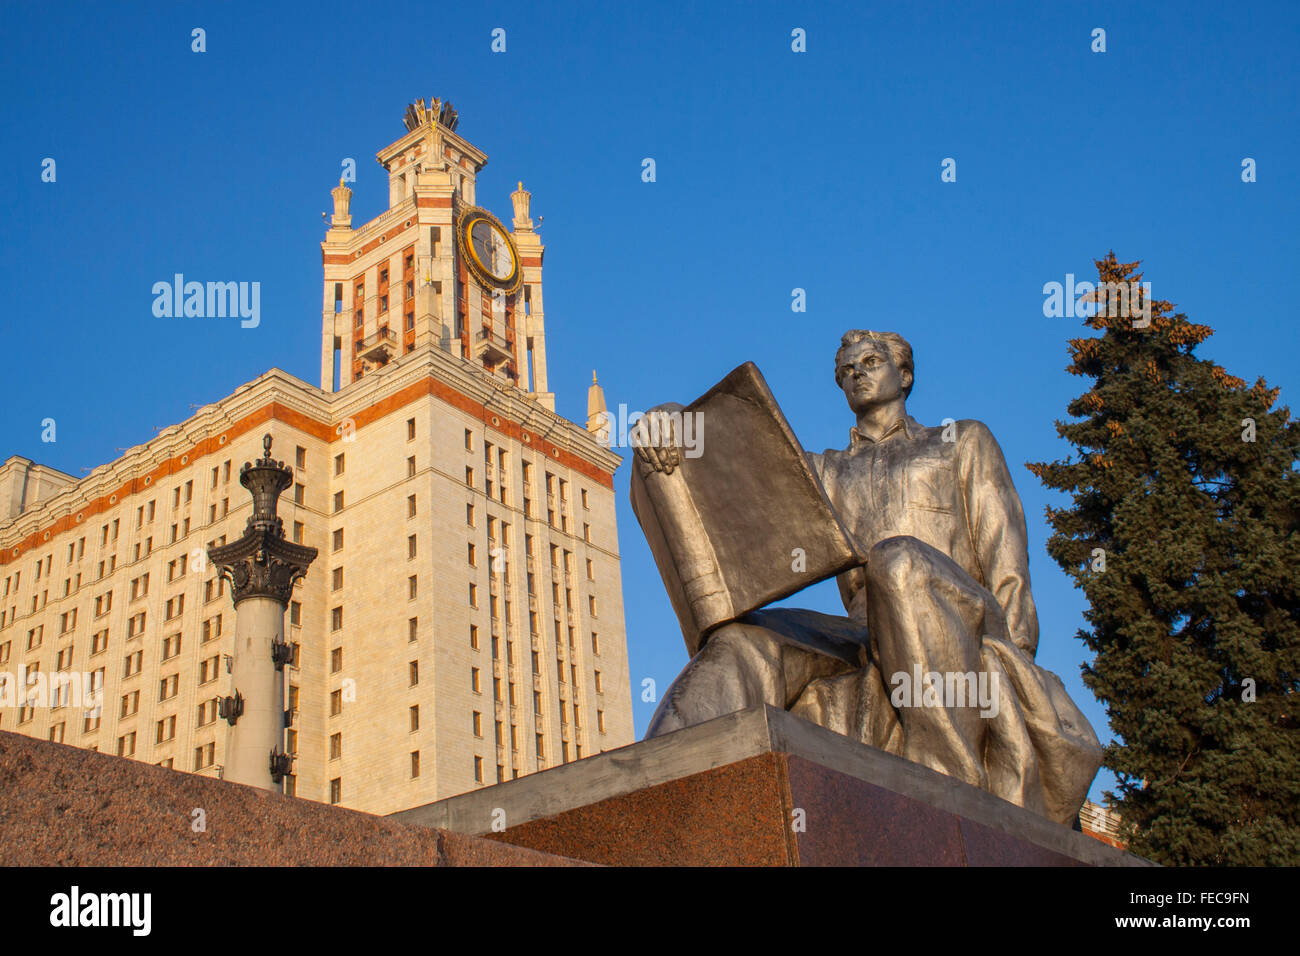 Statue de réalisme socialiste étudiant à l'Université d'État de Moscou, l'une des sept Sœurs de Staline, Moscou, Russie Banque D'Images